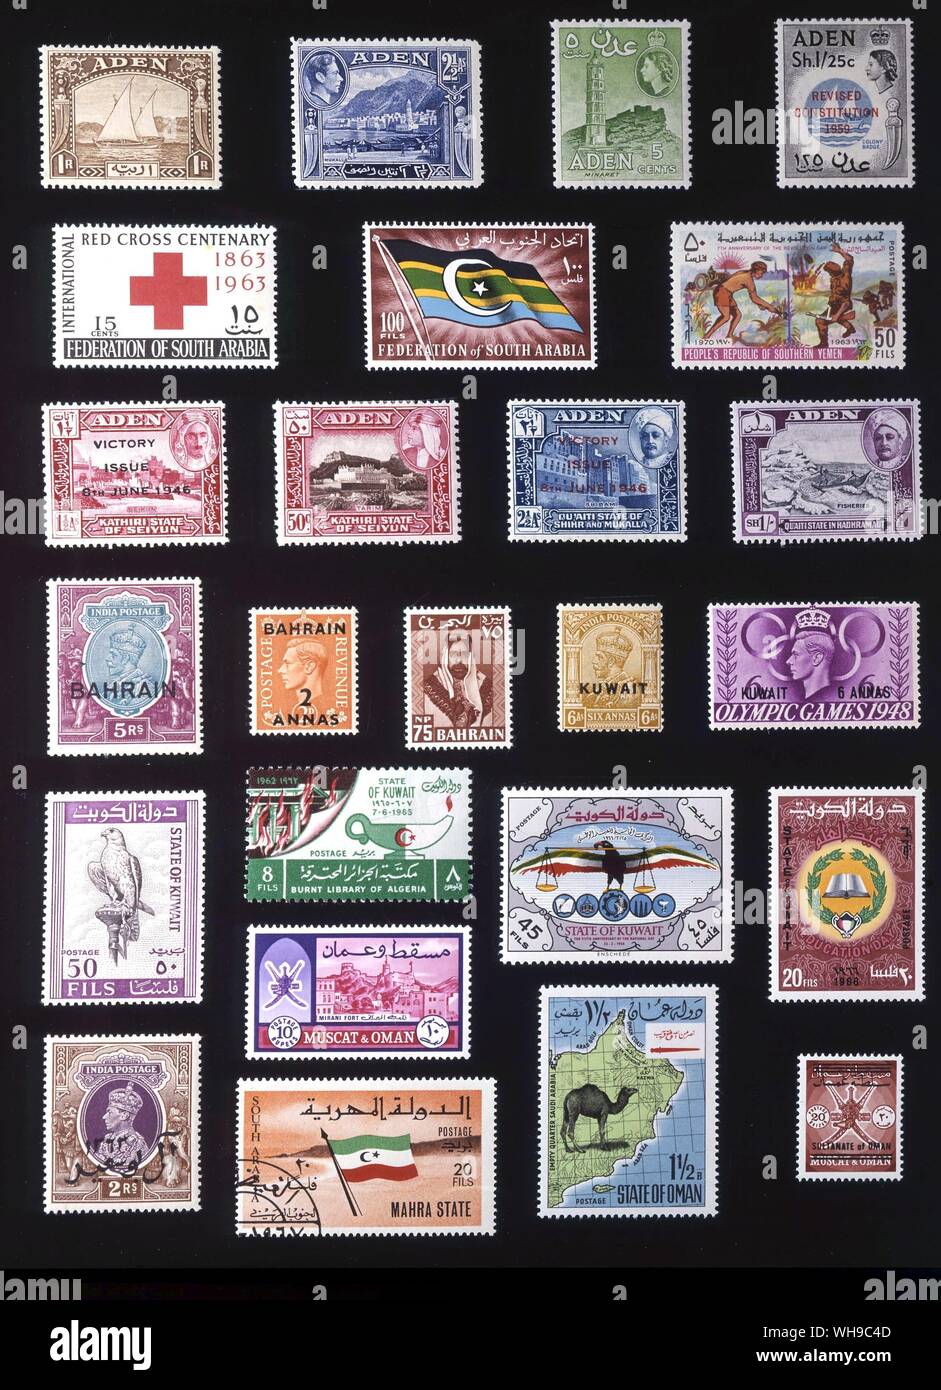 ASIA - SOUTHERN ARABIA: (left to right) 1. Aden, 1 rupee, 1937, 2. Aden, 2.5 annas, 1939, 3. Aden, 5 cents, 1953, 4. Aden, 1.25 shillings, 1959, 5. Federation of South Arabia, 15 cents, 1963, 6. Federtion of South Arabia, 100 fils, 1965, 7. Southern Yemen, 50 fils, 1970, 8. Kathiri State of Seiyun, 1.5 annas, 1946. 9. Kathiri State of Seiyun, 50 cents, 1954, 10. Qu'aiti State of Shihr and Mukalla, 2.5 annas, 1946, 11. Qu'aiti State in Hadhramaut, 1 shilling, 1955, 12. Bahrain, 5 rupees, 1933, 13. Bahrain, 2 annas, 1948, 14. Bahrain, 75 baye paise, 1960, 15. Kuwait, 6 annas, 1923, 16. Kuwait, Stock Photo